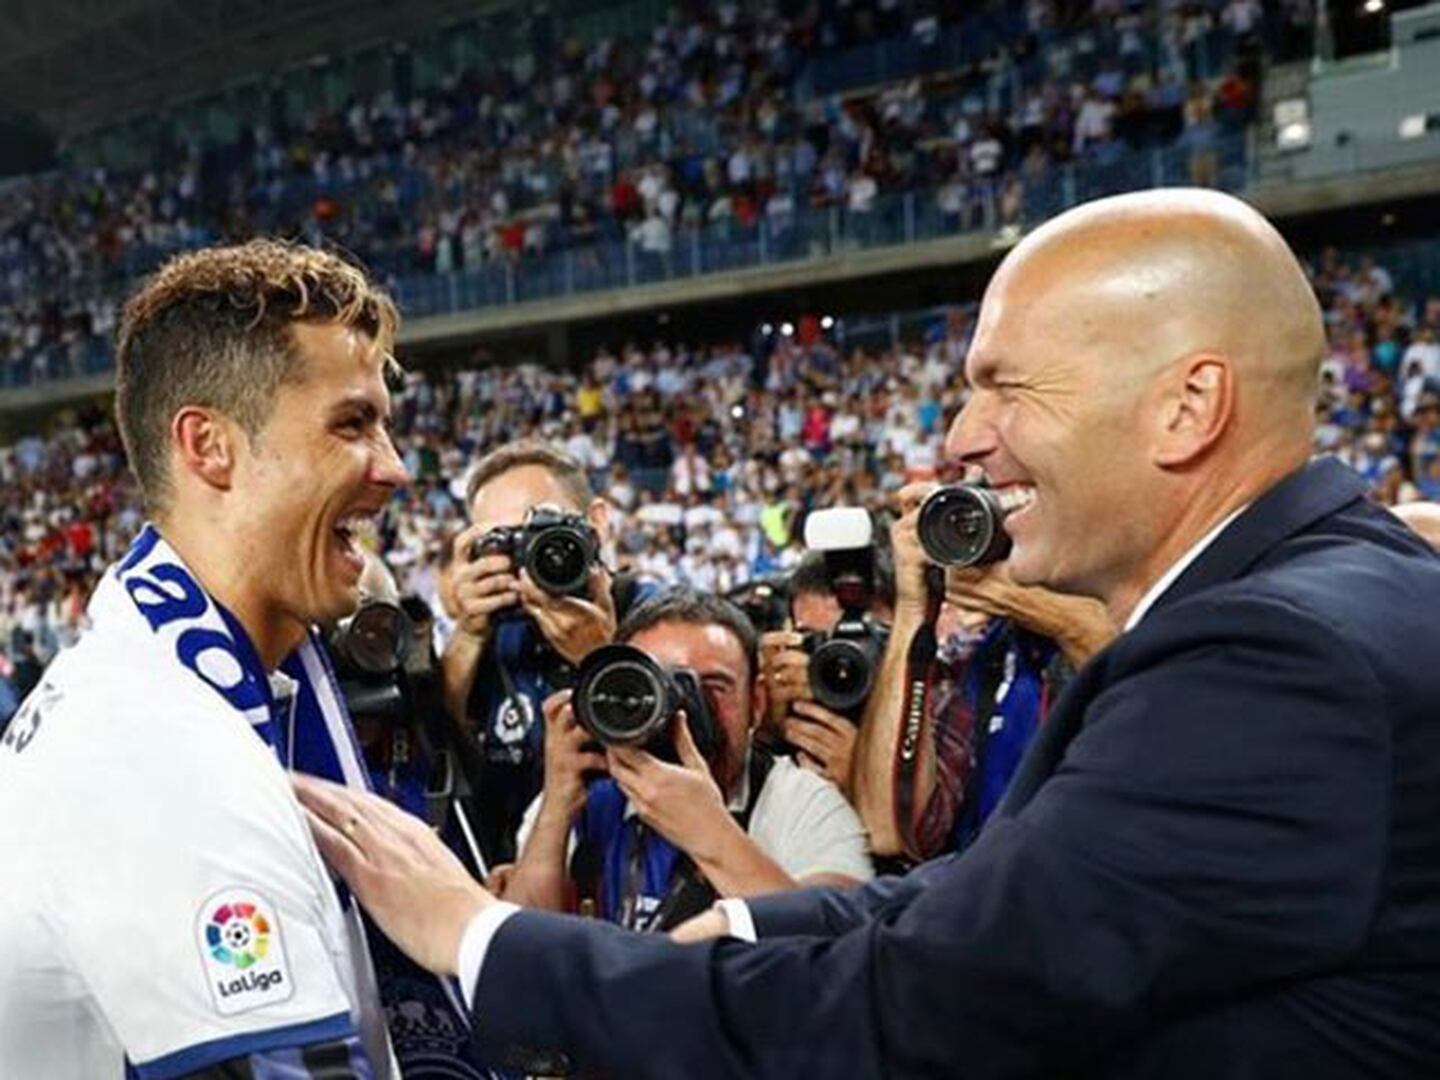 El mensaje de Cristiano Ronaldo a Zidane por su adiós del Real Madrid